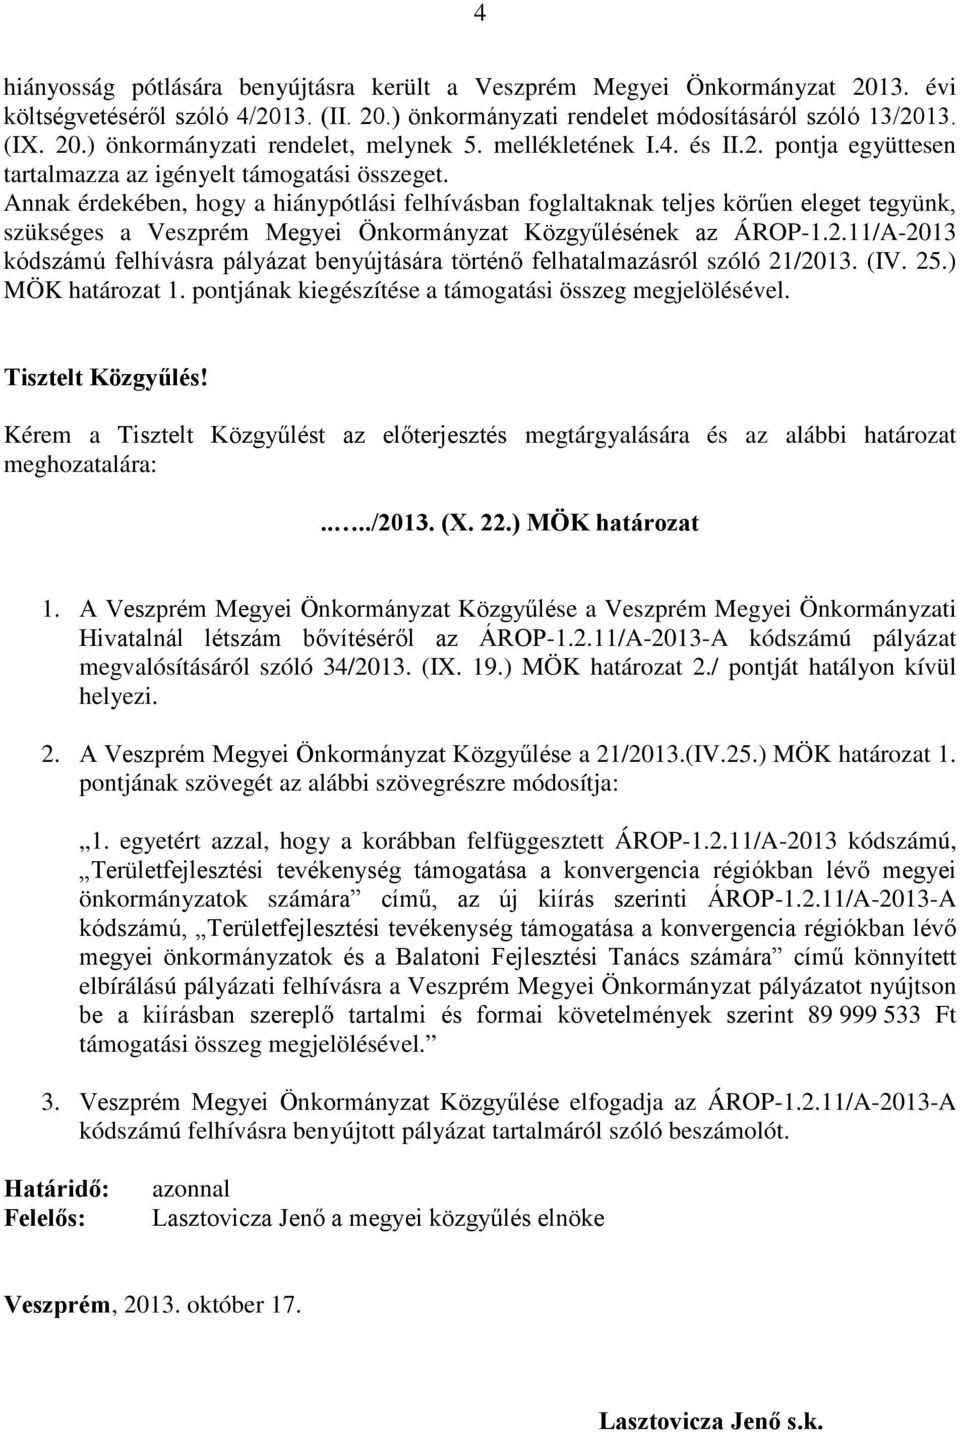 Annak érdekében, hogy a hiánypótlási felhívásban foglaltaknak teljes körűen eleget tegyünk, szükséges a Veszprém Megyei Önkormányzat Közgyűlésének az ÁROP-1.2.